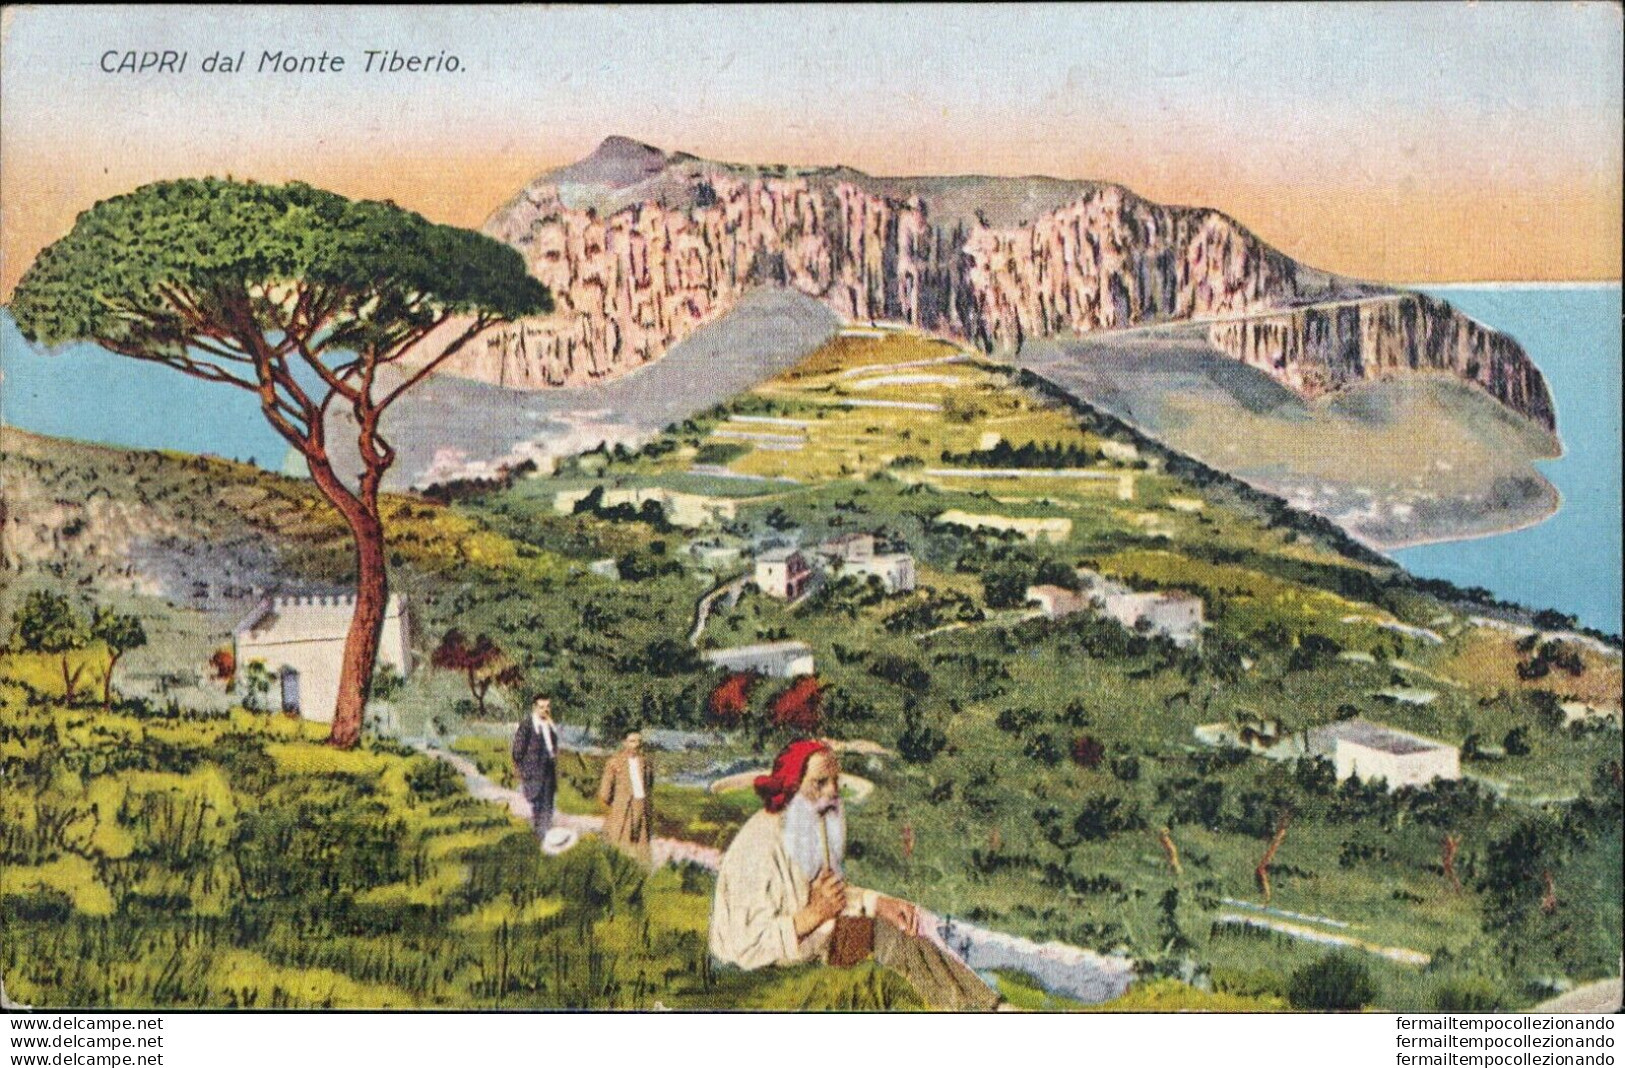 At571 Cartolina Capri Dal Monte Tiberio  Provincia Di Napoli - Napoli (Napels)